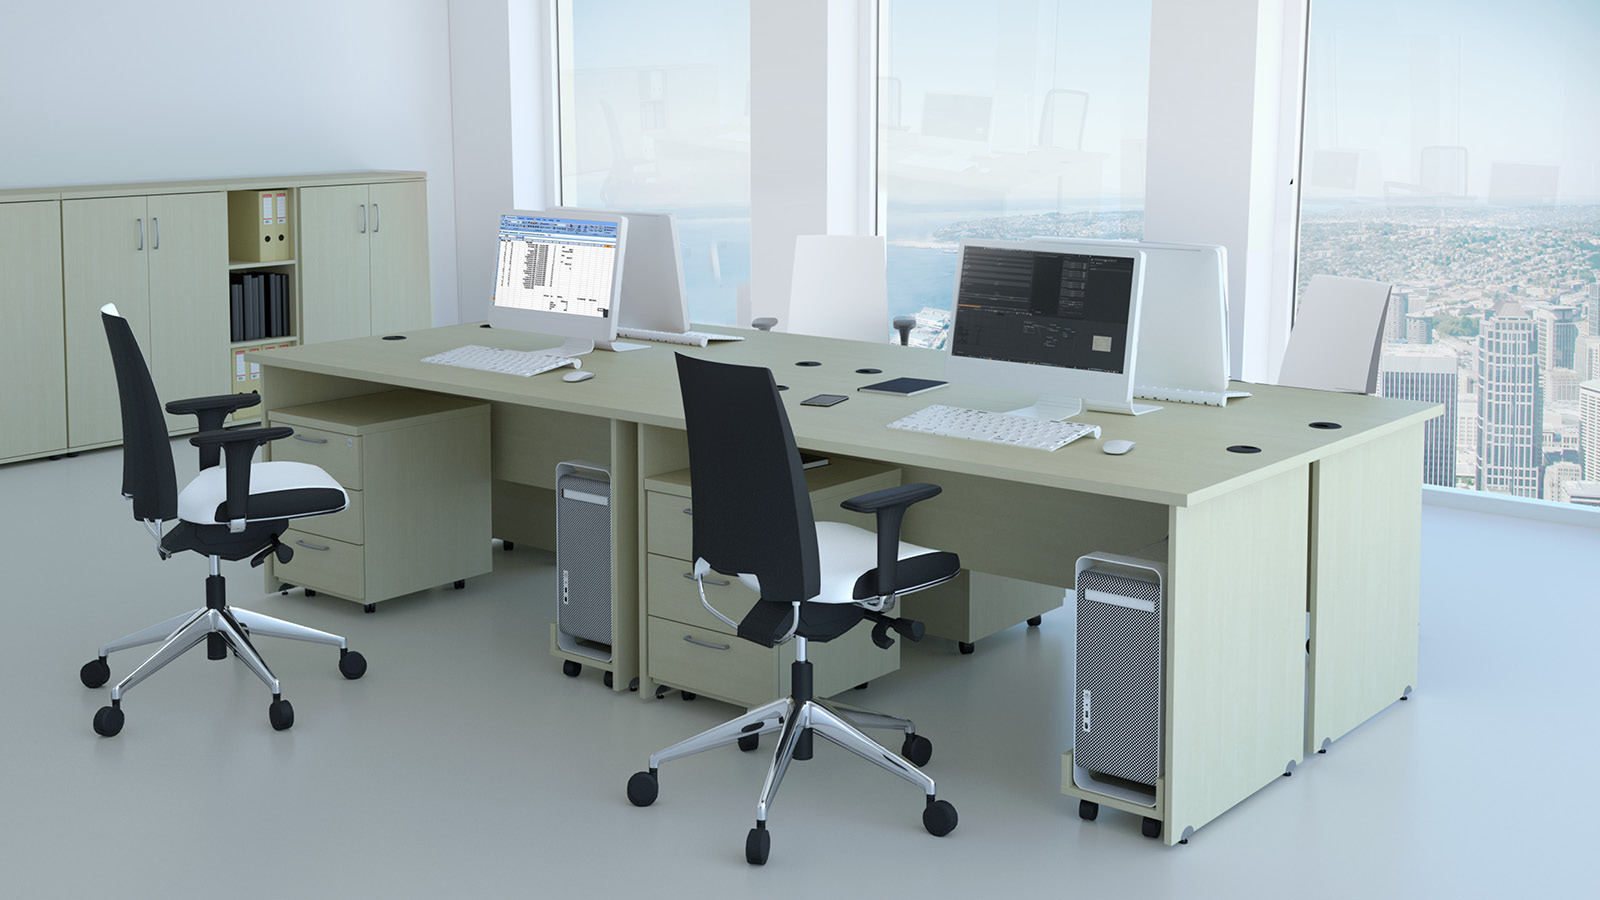 Biuro wyposażone w klonowe meble pracownicze - płytowe biurka z pomocnikami, w otoczeniu niskich szaf i krzeseł obrotowych.